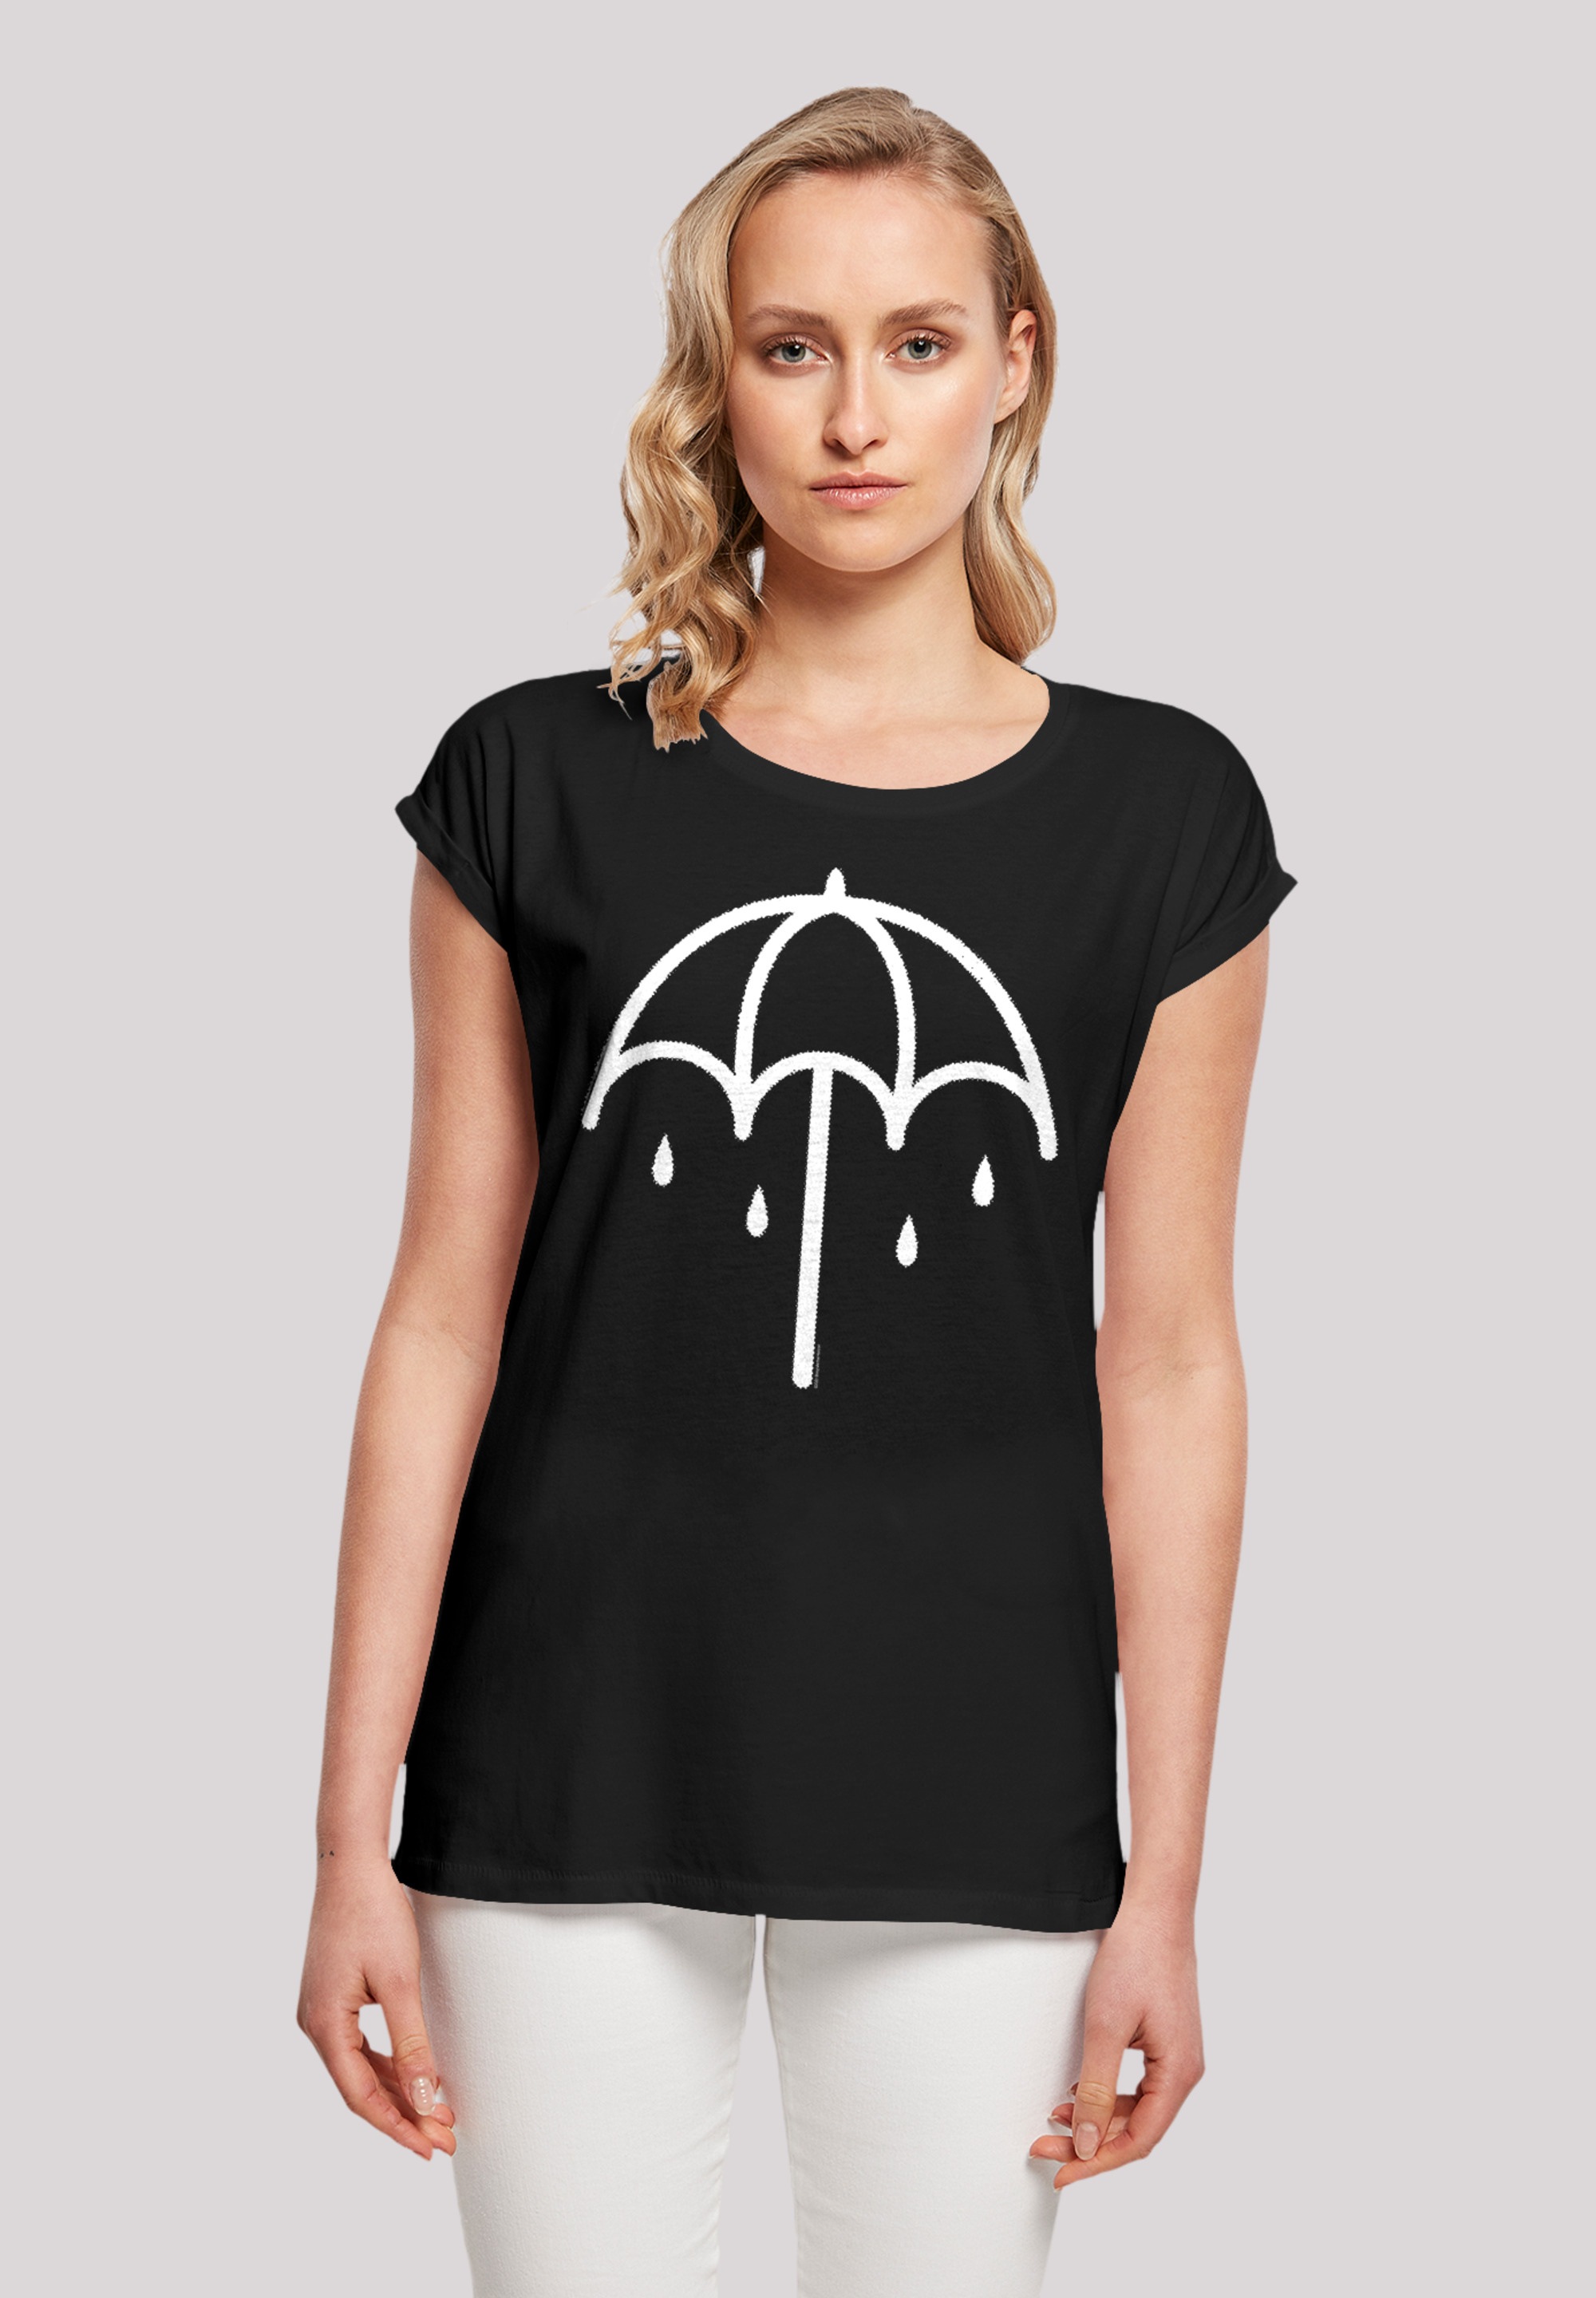 F4NT4STIC T-Shirt Premium für »BMTH Band BAUR Musik, bestellen Rock- Metal Band Umbrella | 2 Qualität, DARK«